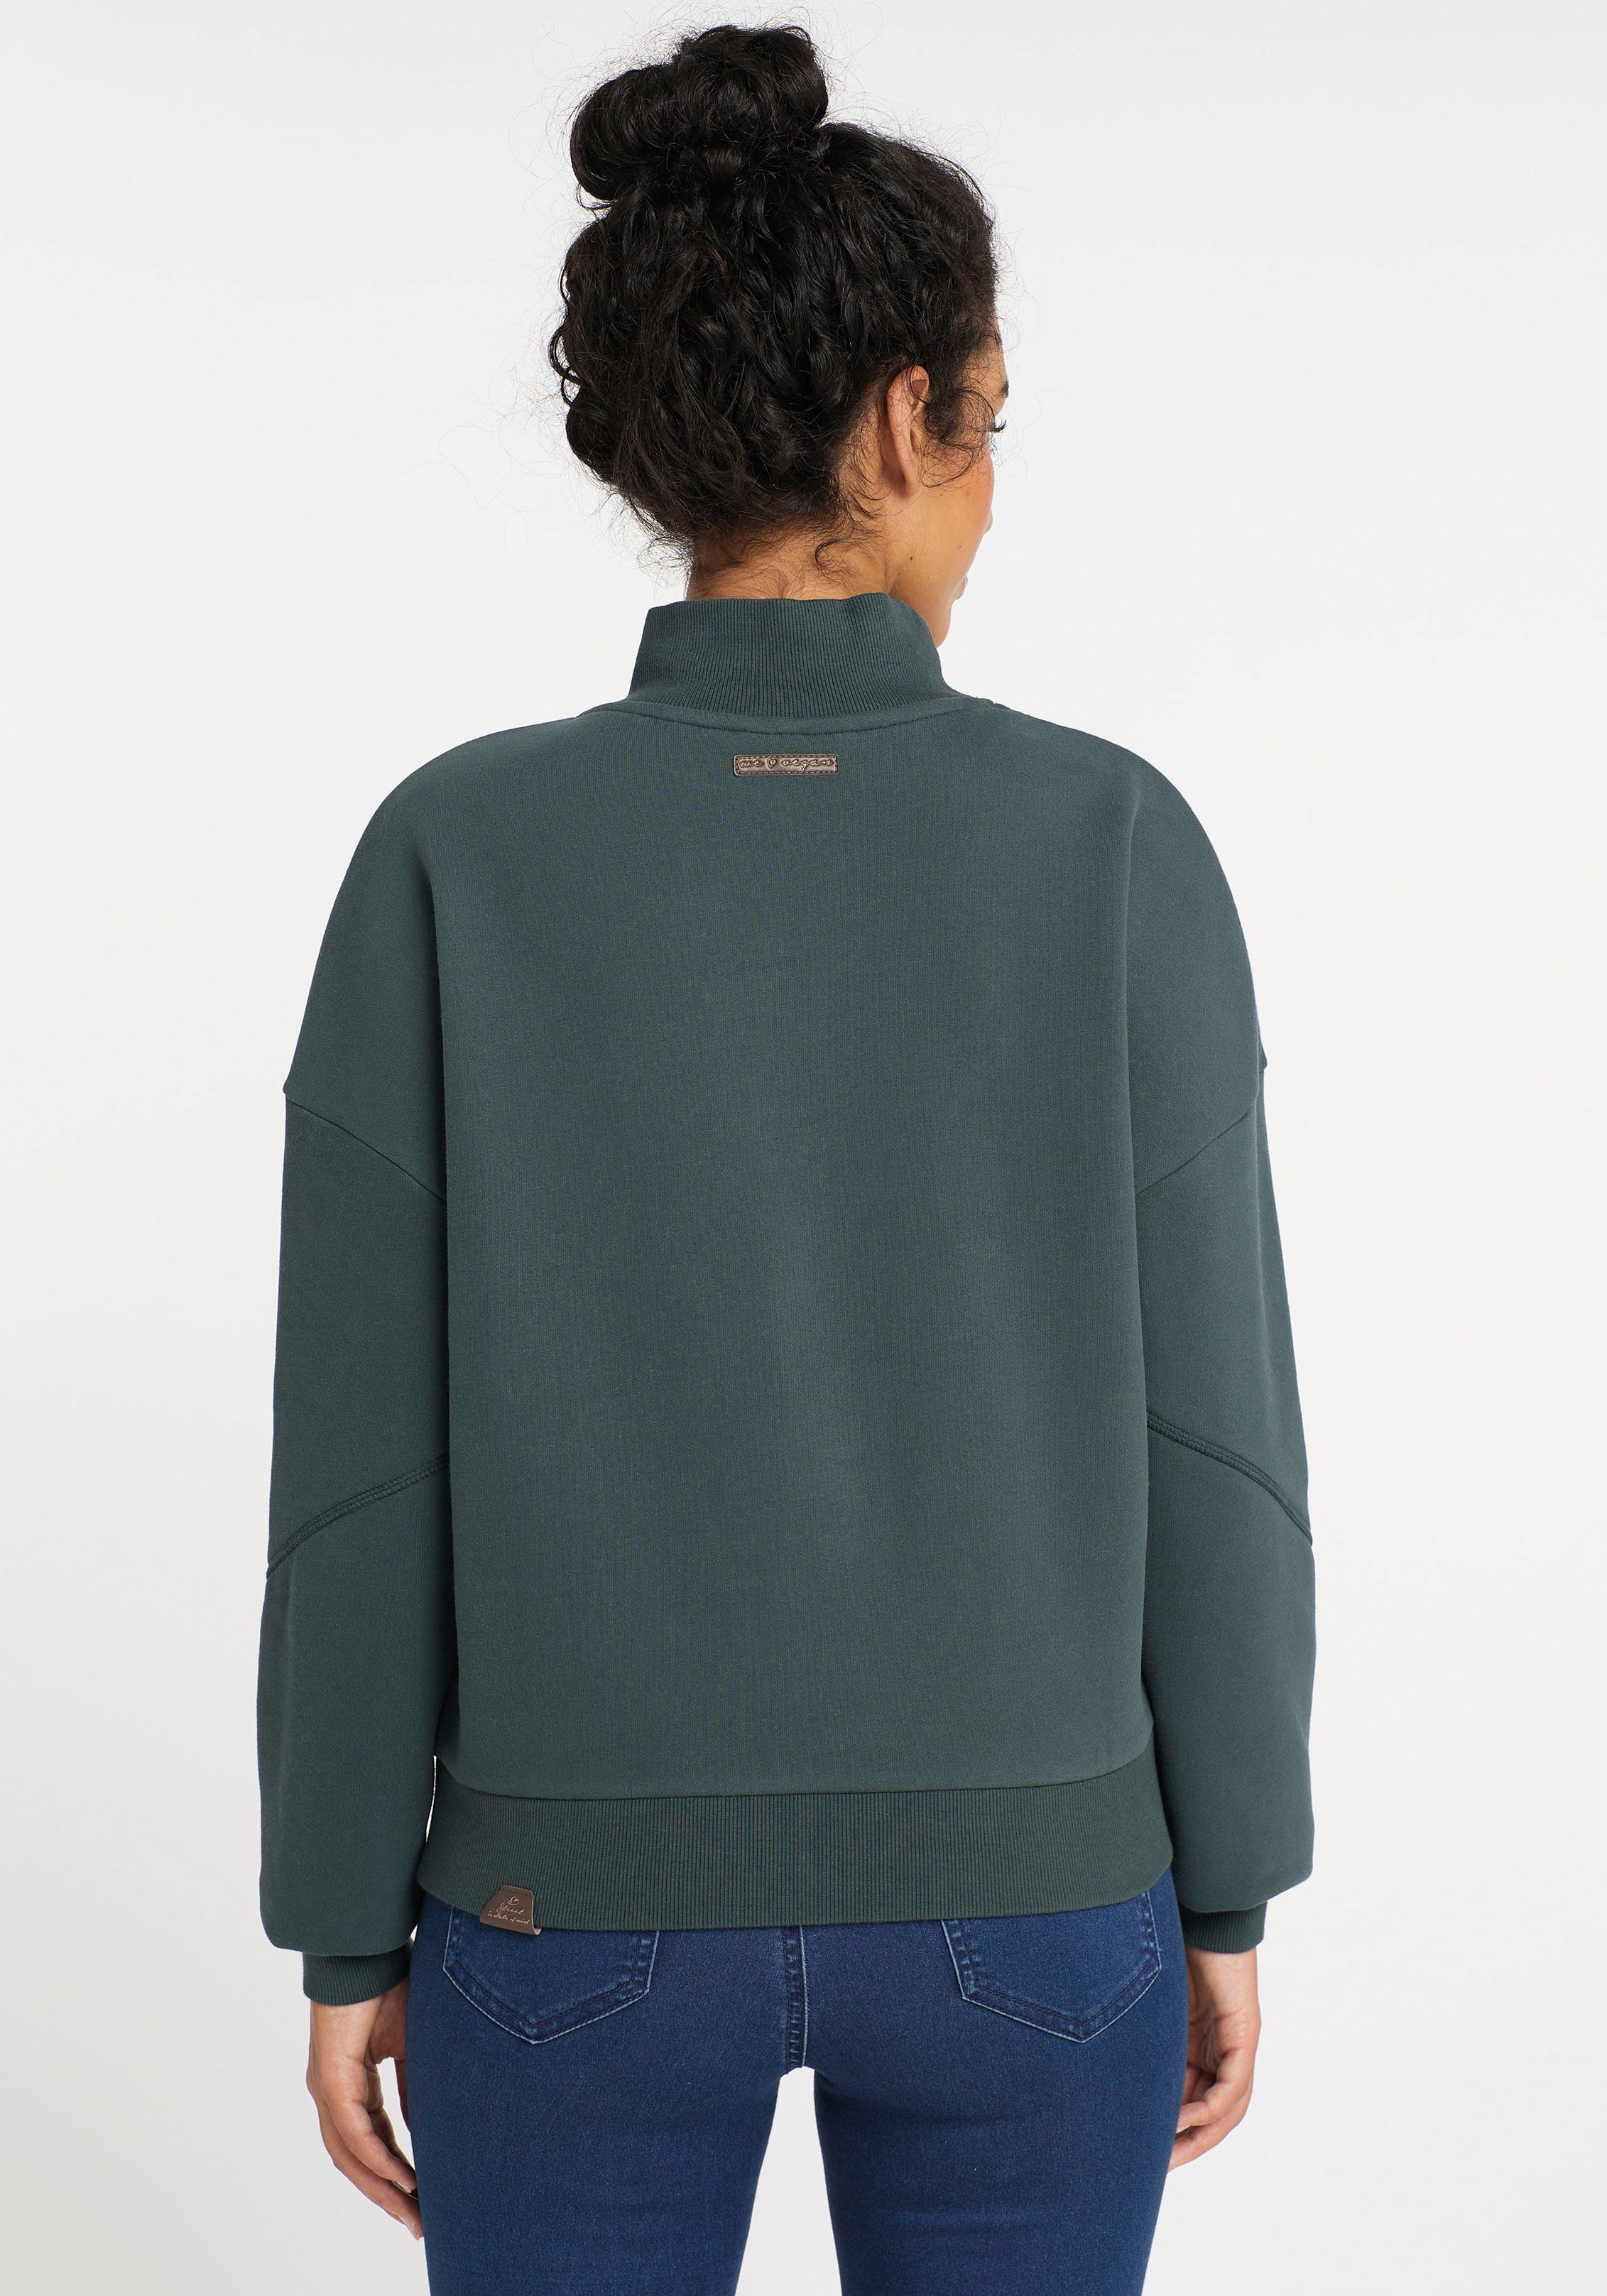 green KAILA Sweater Ragwear 5021 dark SWEAT